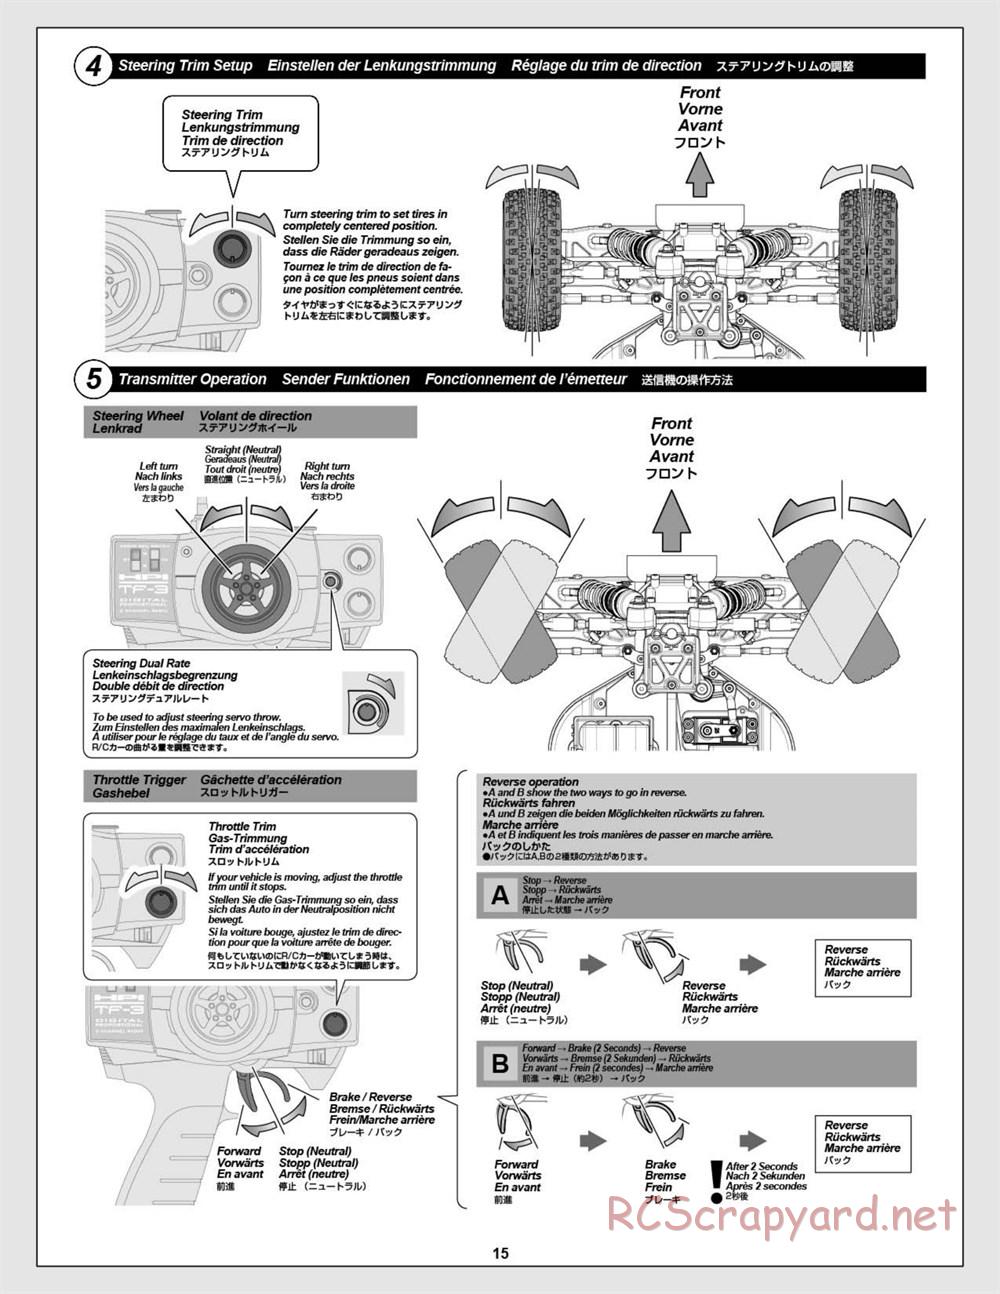 HPI - Vorza Flux HP - Manual - Page 15